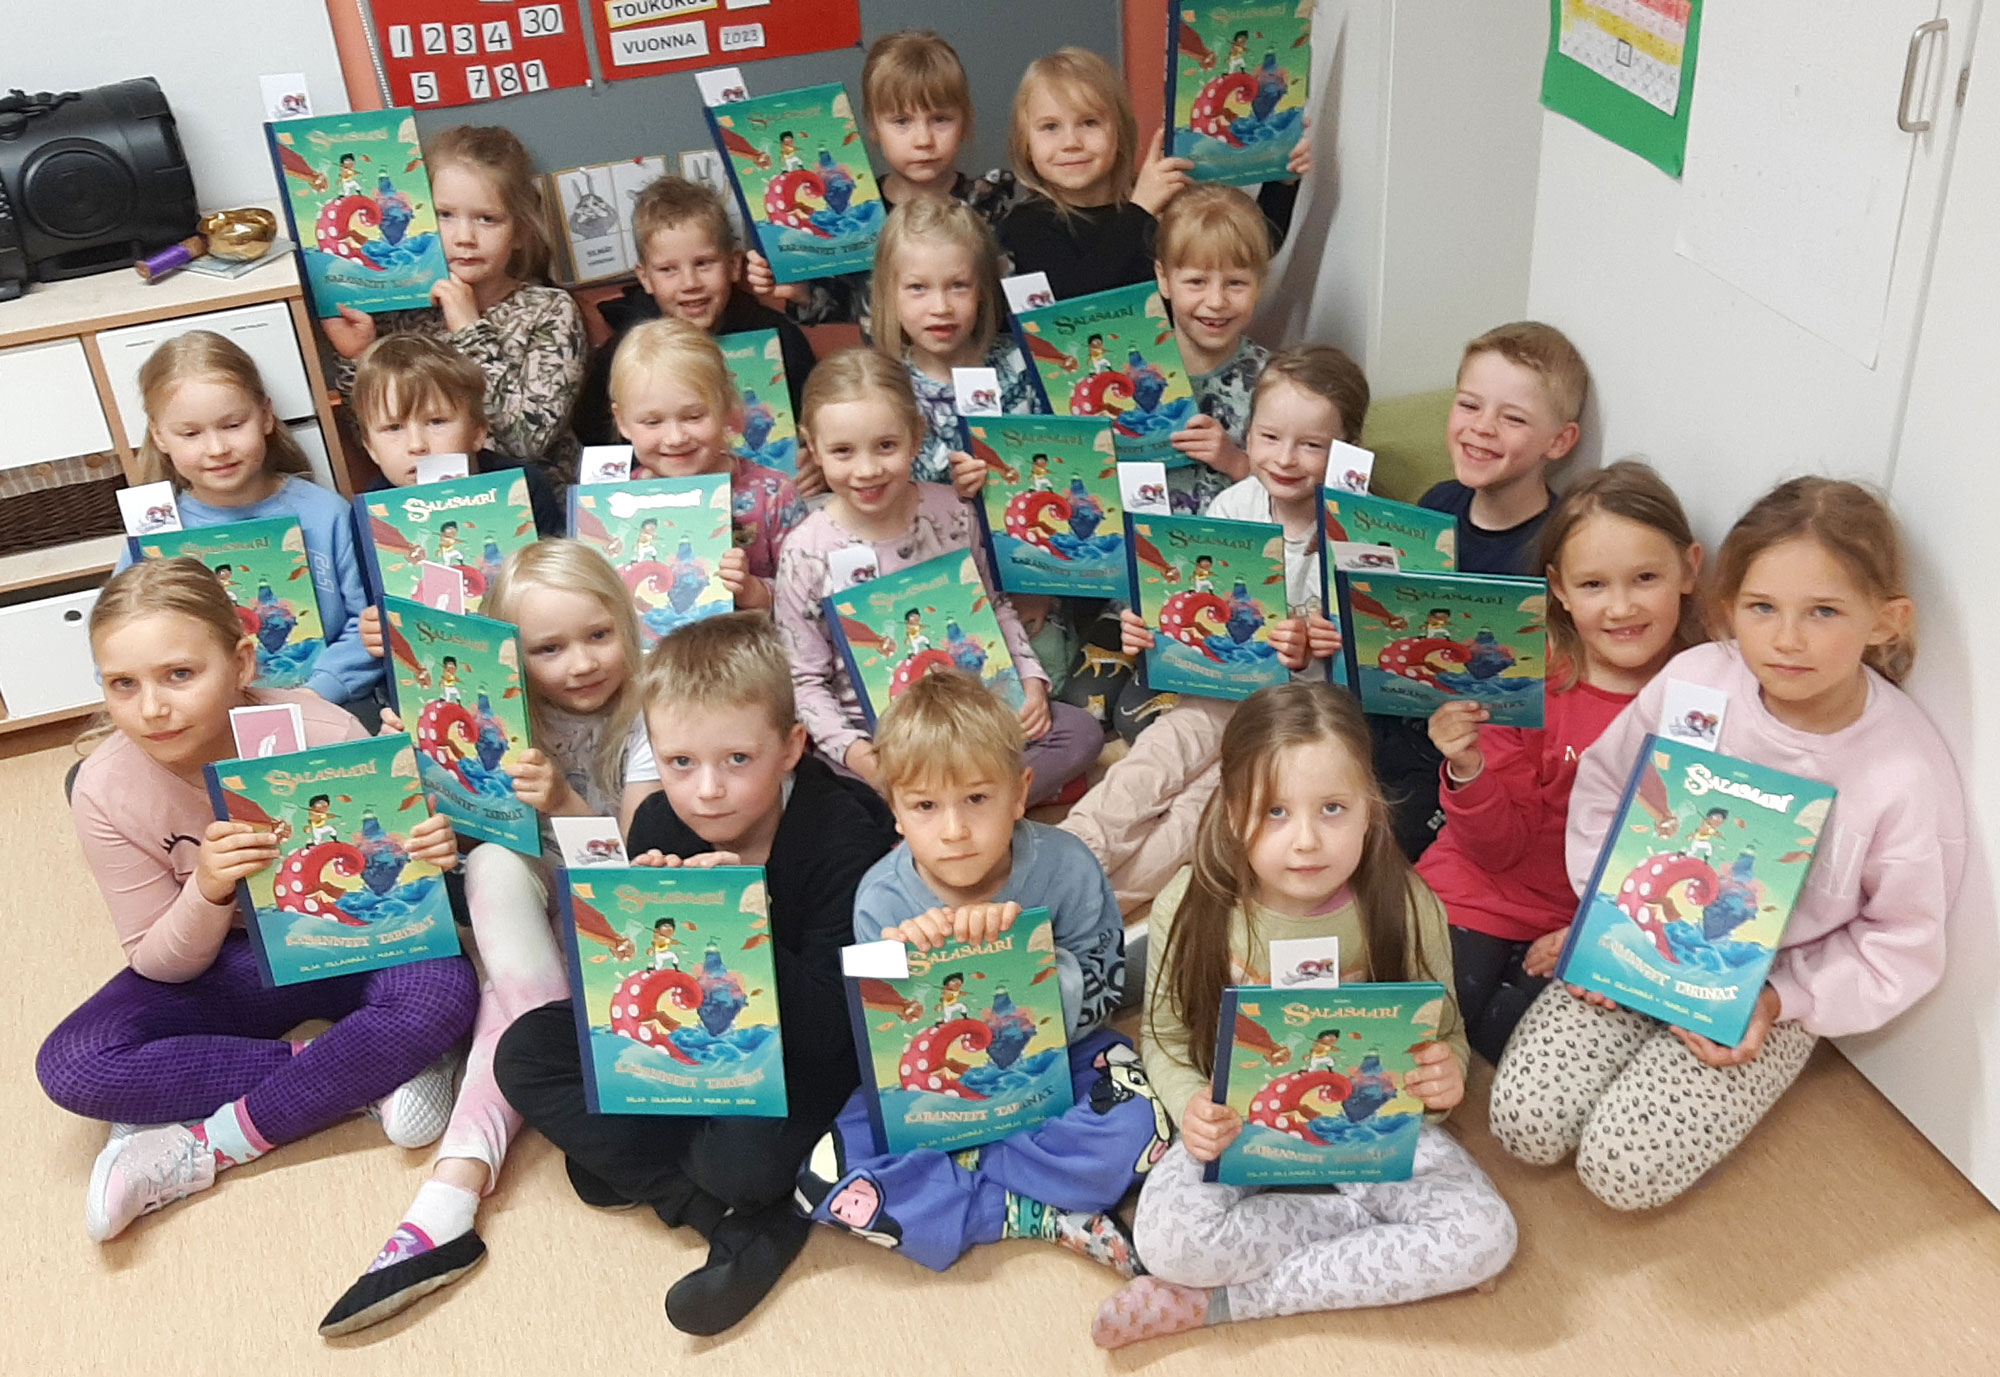 Ruutanan koulun Terälehdet-eskariryhmä innostui lukemisesta niin paljon, että se palkittiin Västäräkin lukumatka -kampanjassa eniten lukeneena ryhmänä. Jokainen lapsi sai palkinnoksi oman kappaleen.